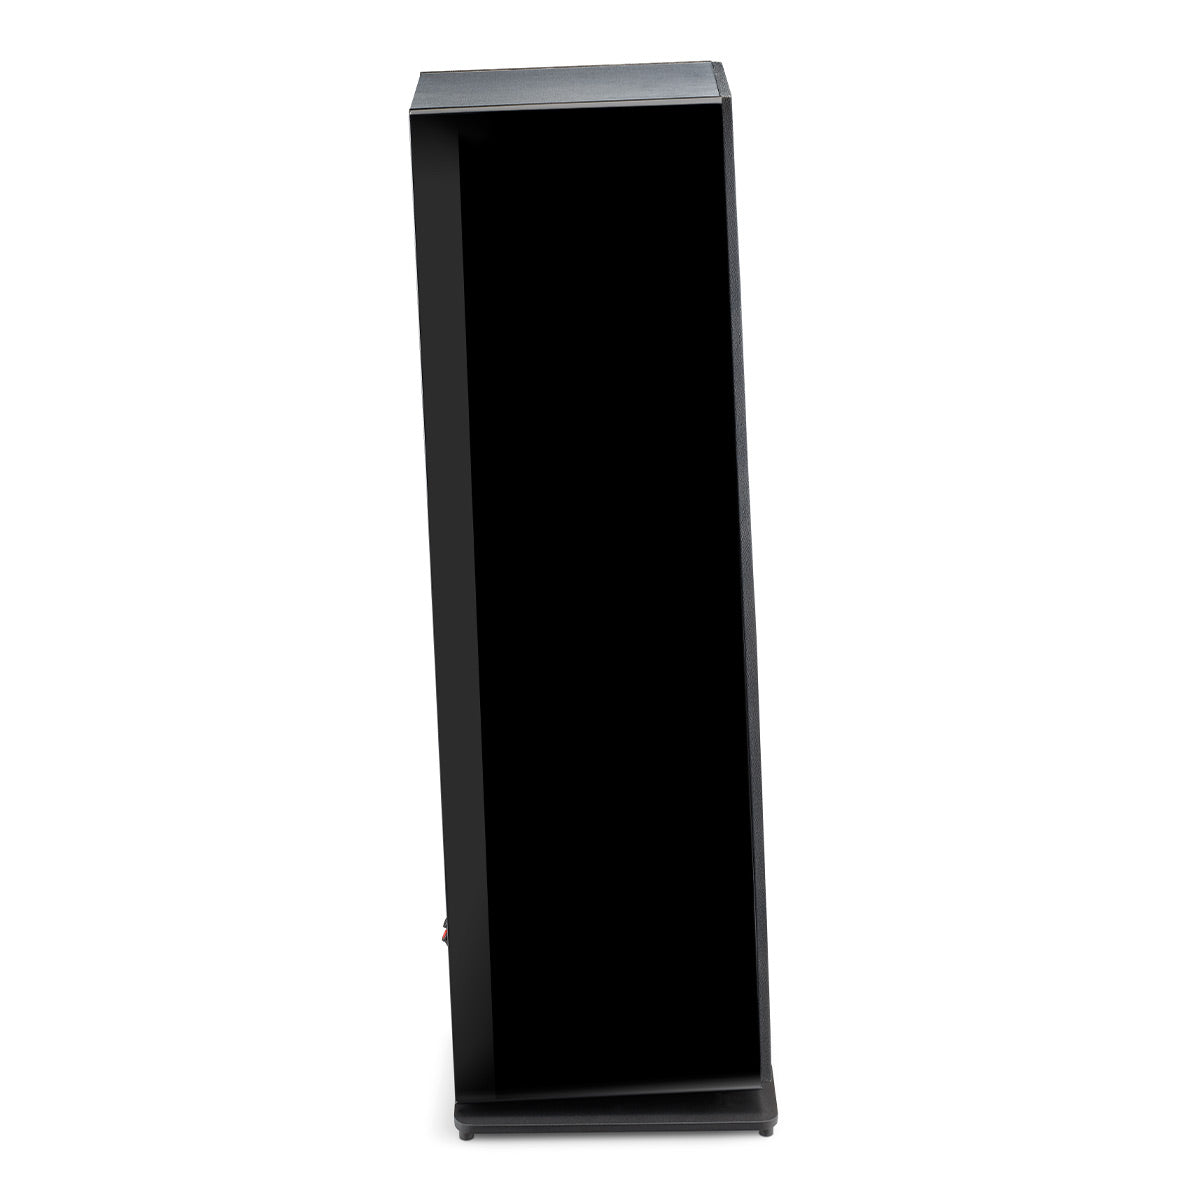 Focal Vestia No.3 3-Way Bass-Reflex Floorstanding Loudspeaker with 3 Woofers - Each (Black High Gloss)